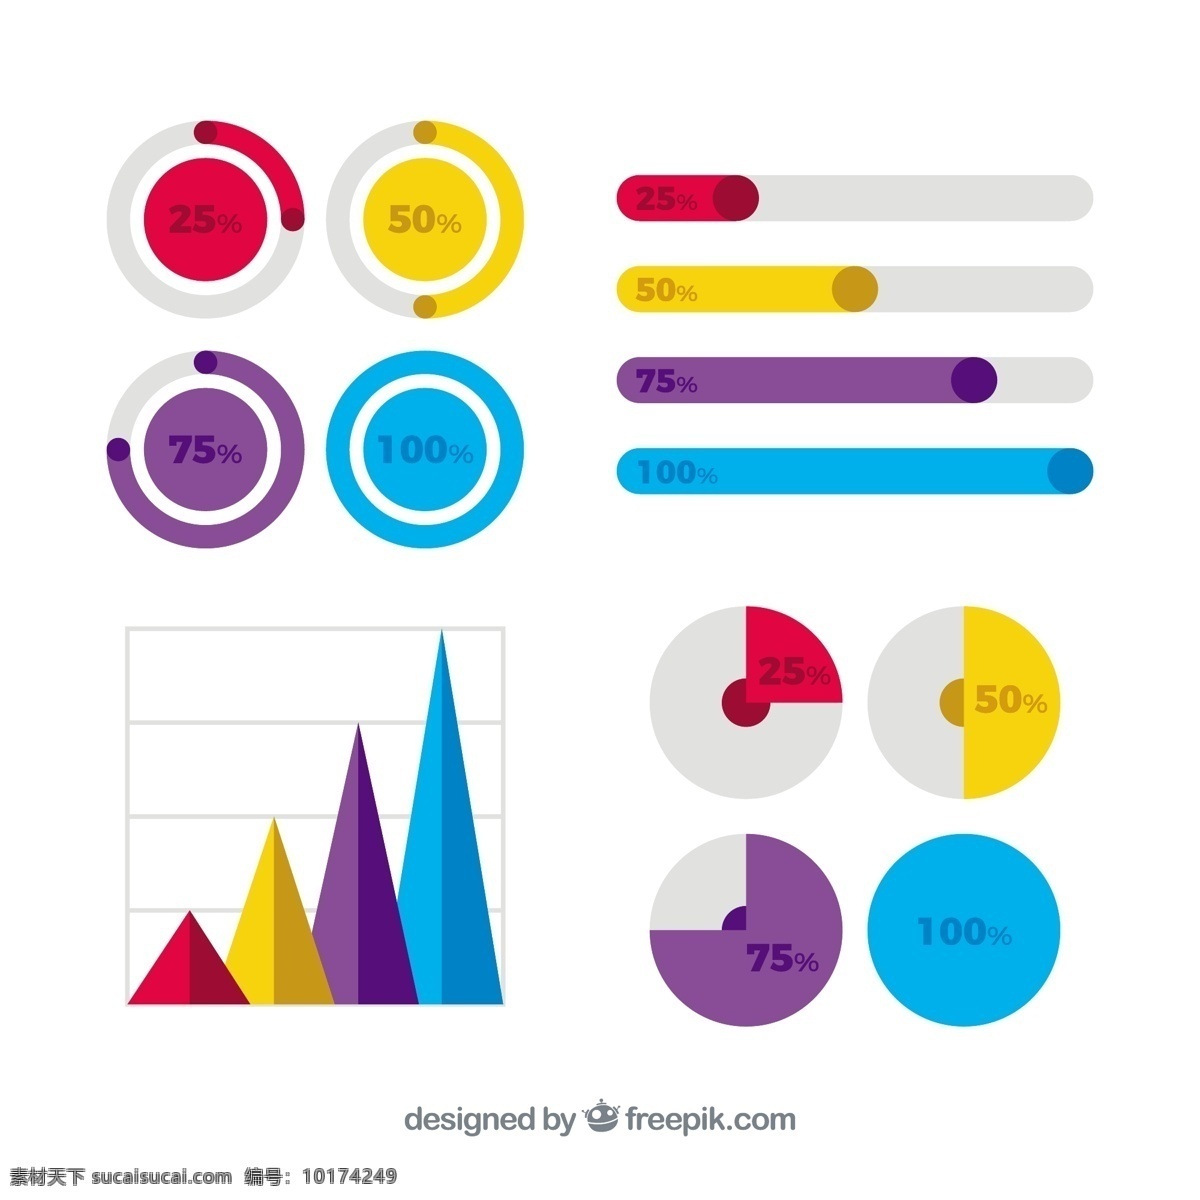 彩色图形图表 图表 模板 营销 色彩 图 平面 装饰 工艺图表模板 数据 信息 平面设计 图形